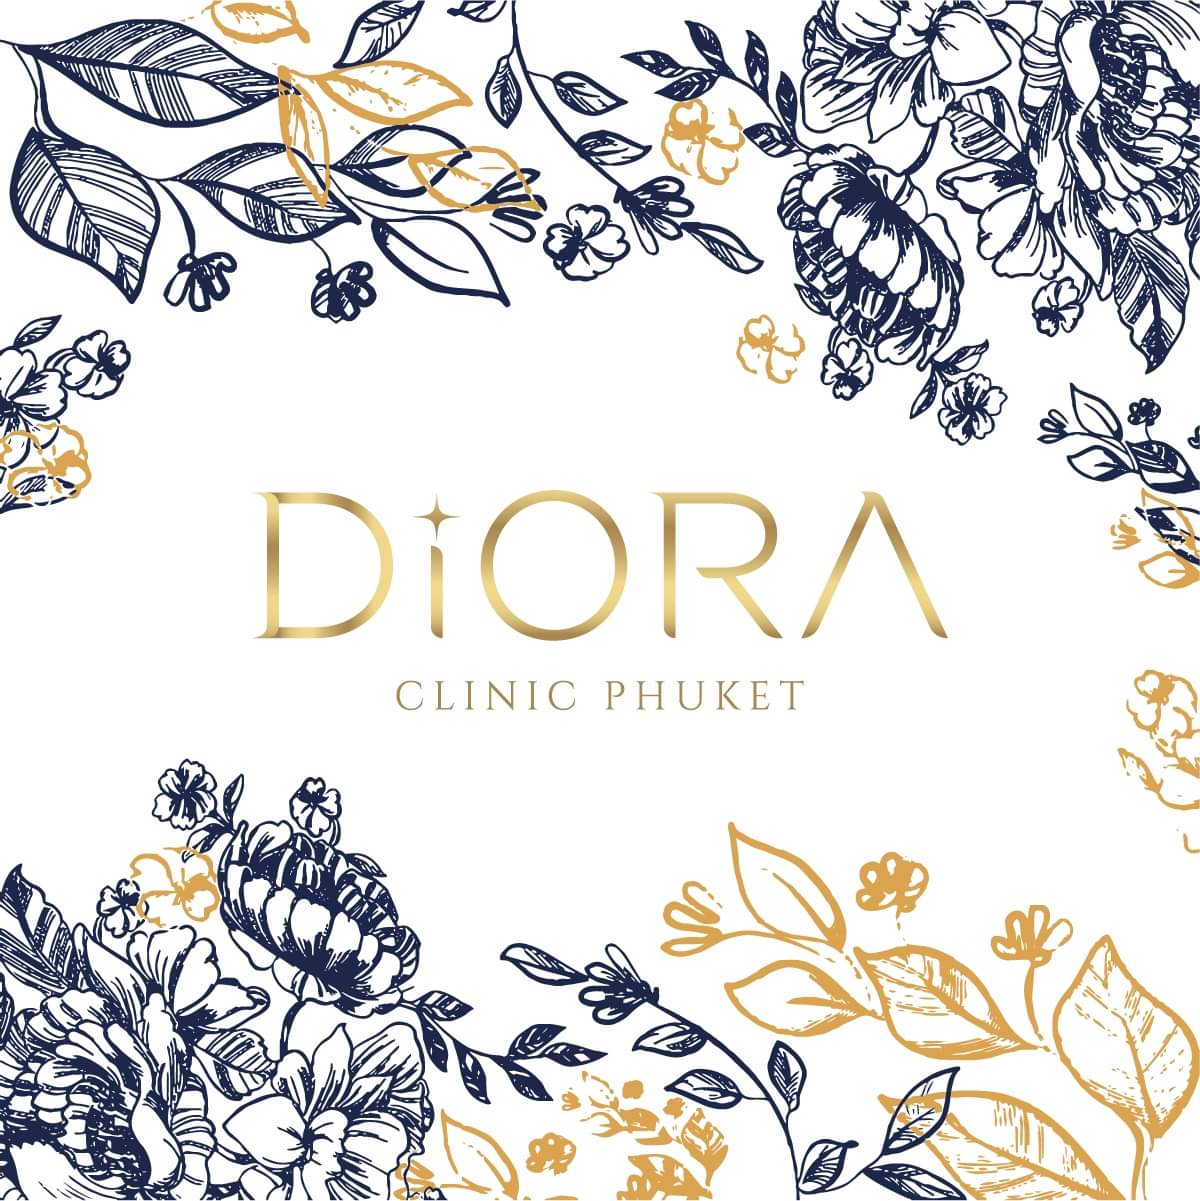 Diora clinic